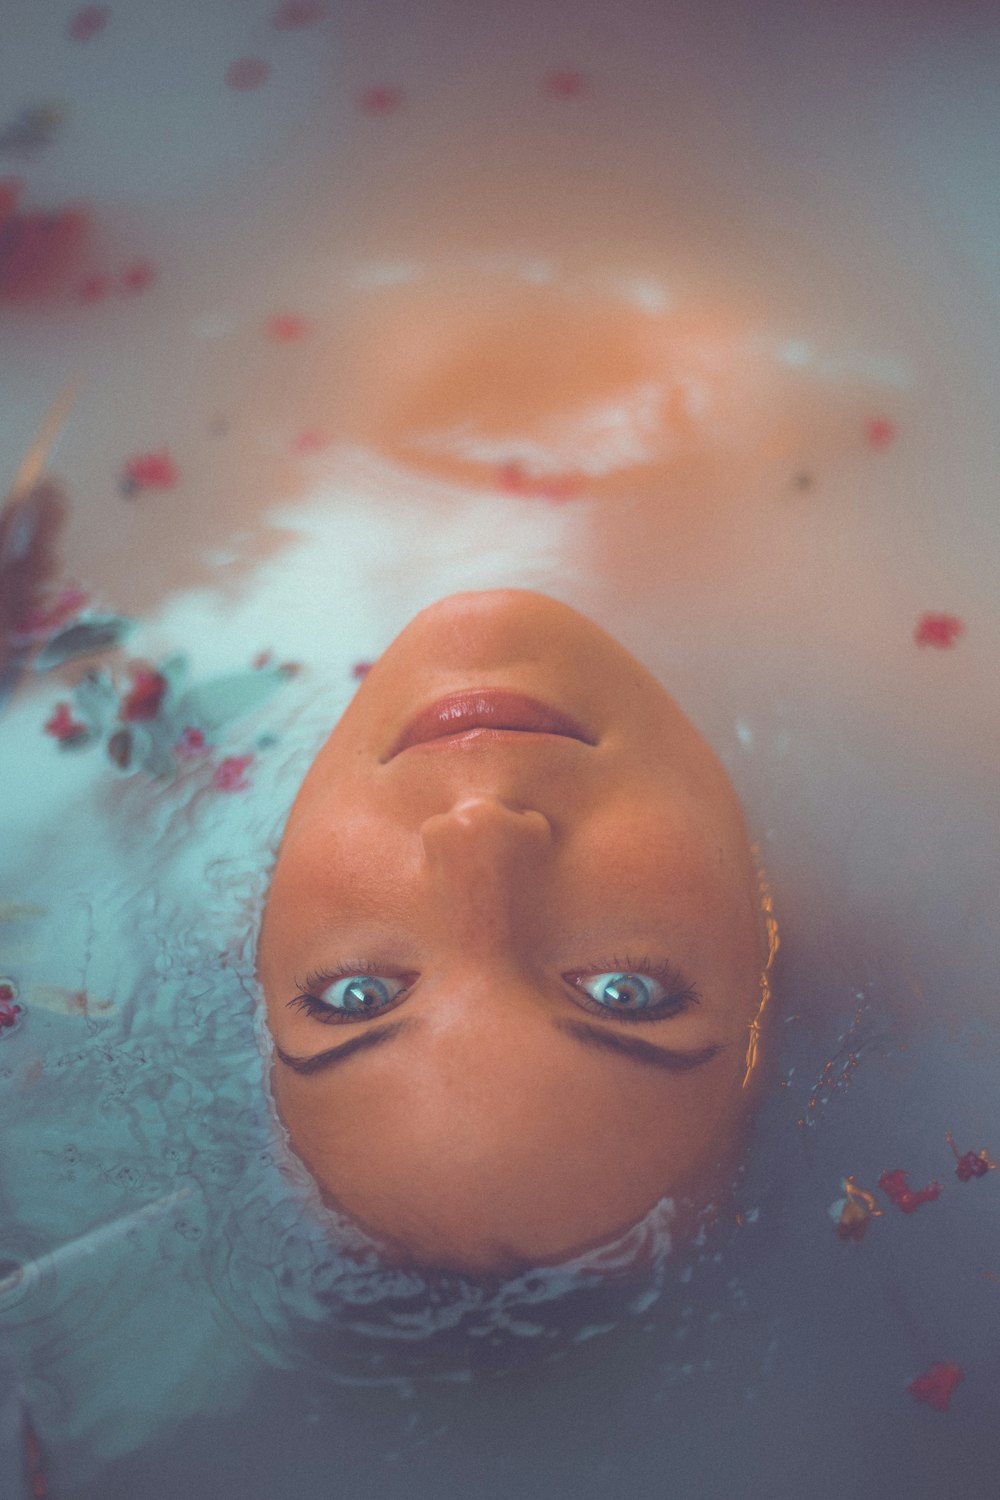 femme se baignant sur l’eau avec des pétales de fleurs rouges